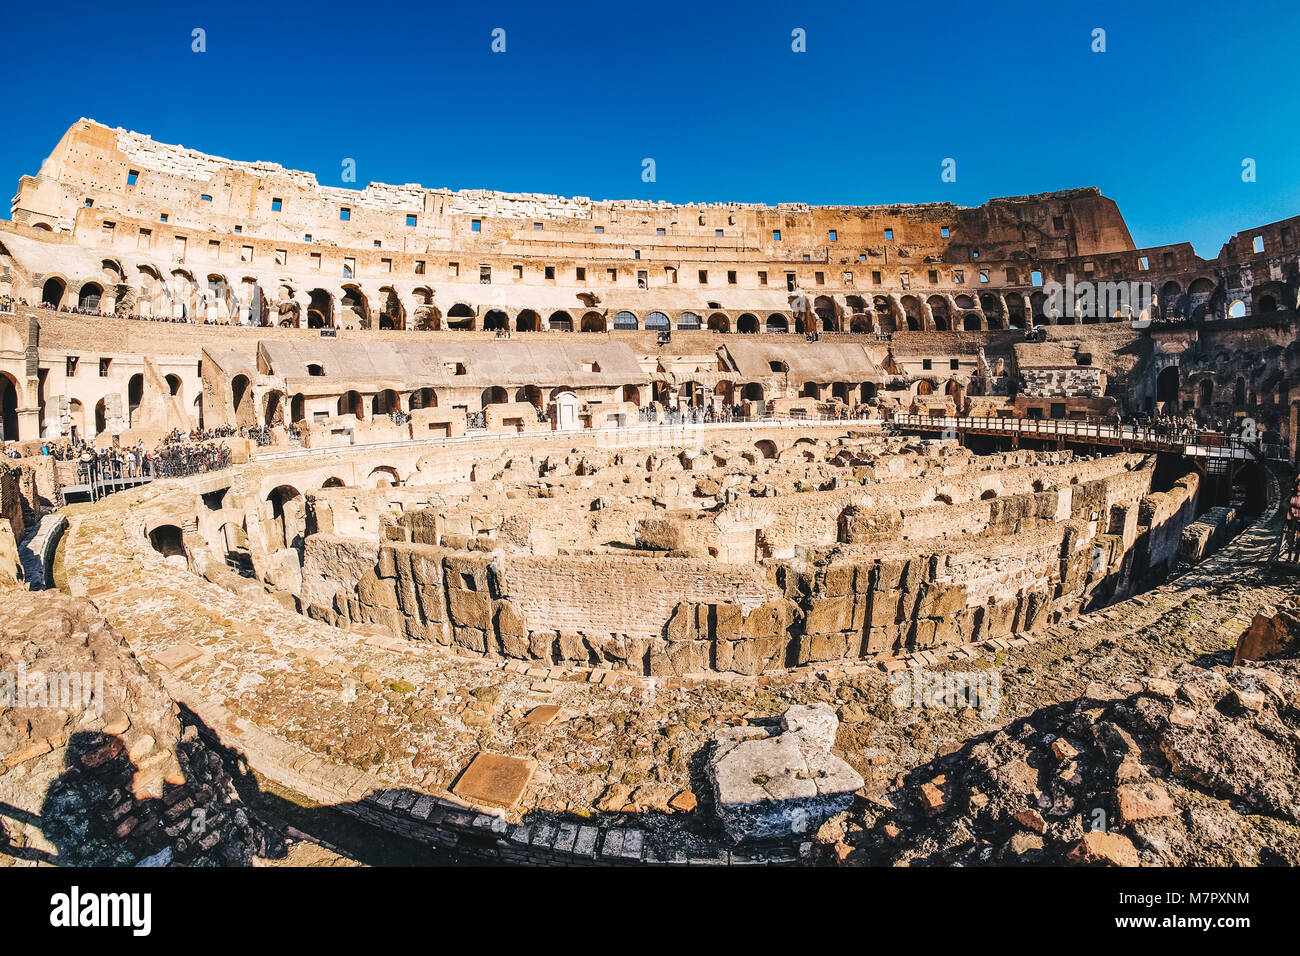 Vue panoramique de l'intérieur du Colisée romain à Rome, Italie Banque D'Images